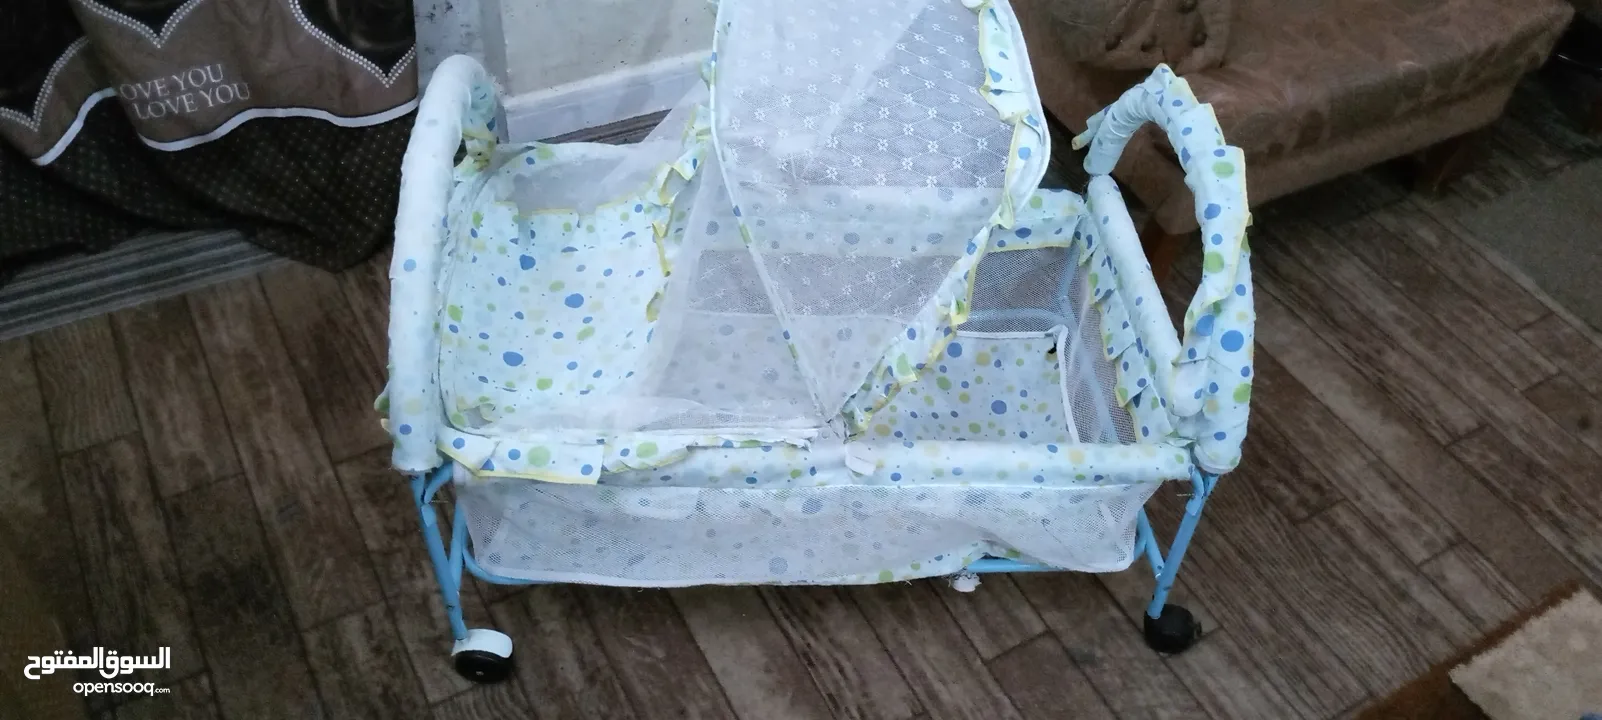 تخت اطفال حديث ولادة بيبي متحرك مع عجلات وناموسية  نظيف جدا للبيع